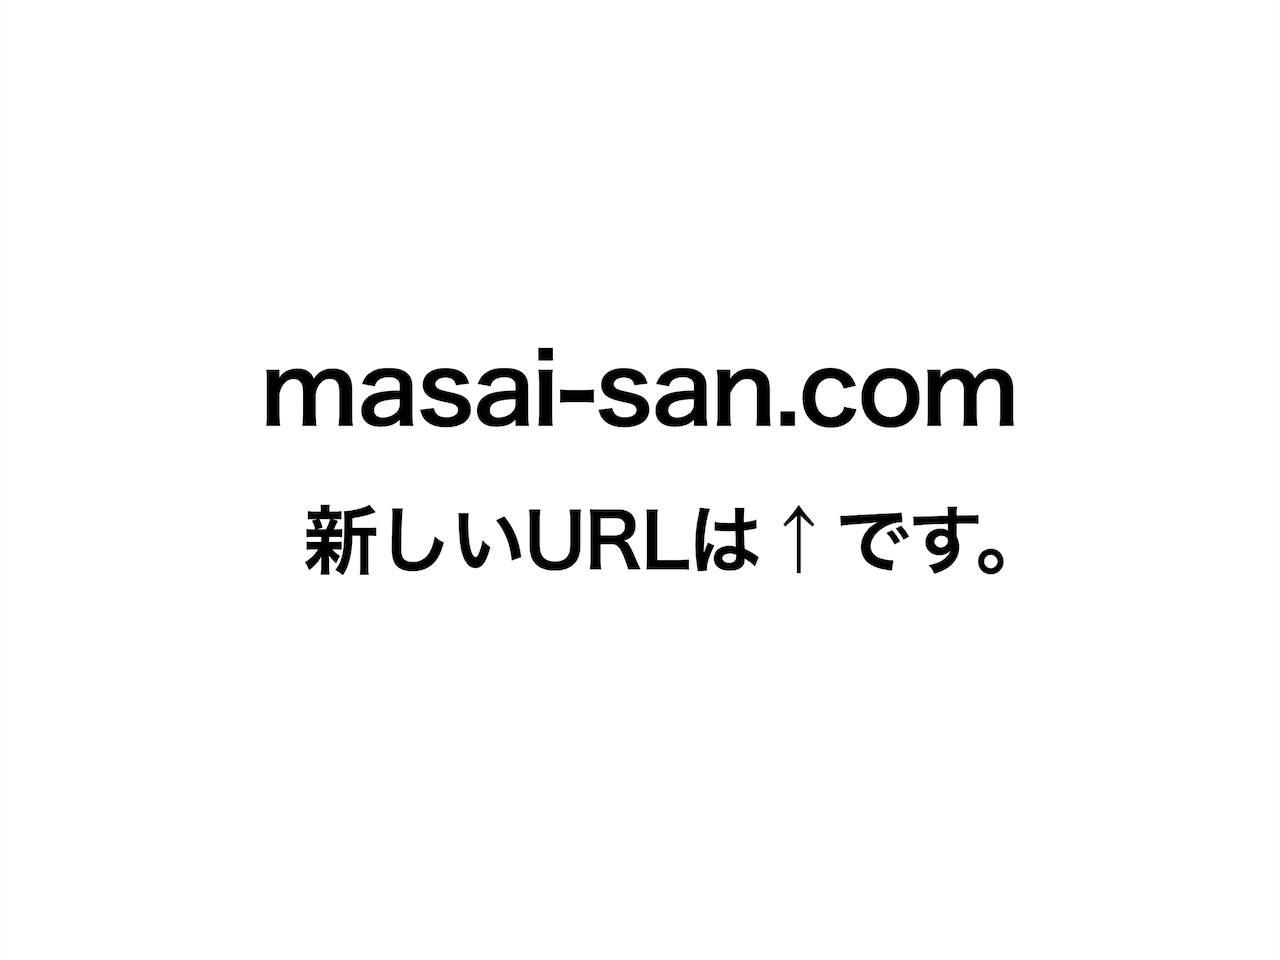 masai-san_dot_com.jpeg